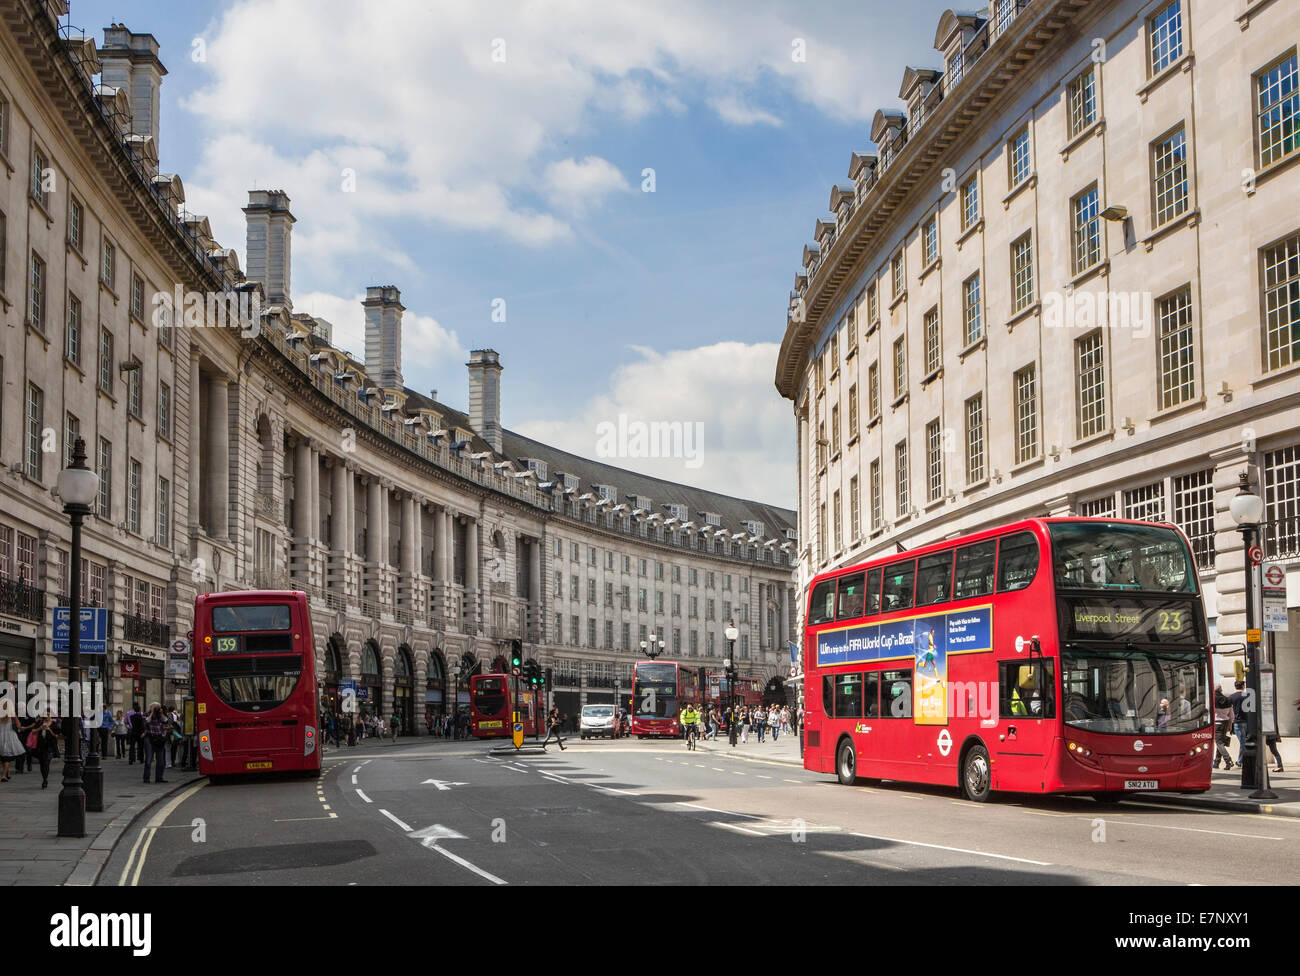 Ville, London, England, UK, l'architecture, bus, célèbre, rouge, shopping, rue, tourisme, Voyage Banque D'Images